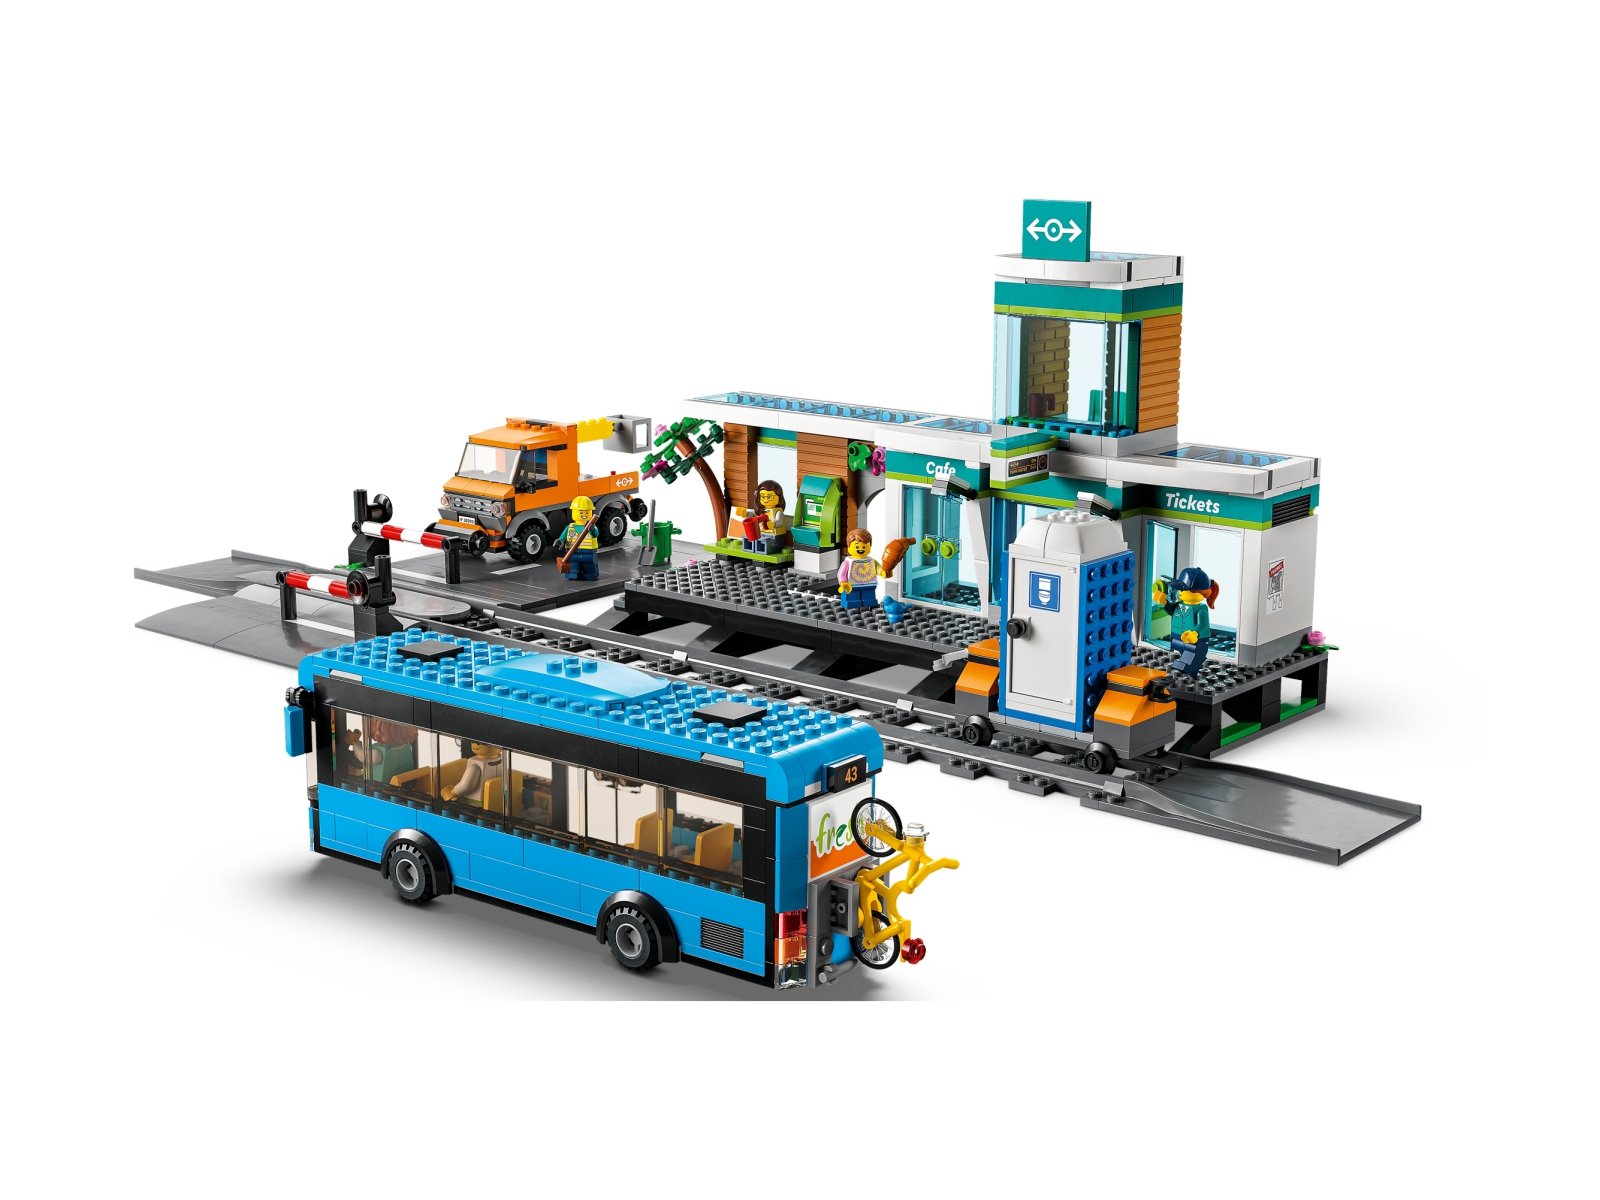 LEGO 60335 City Dworzec kolejowy